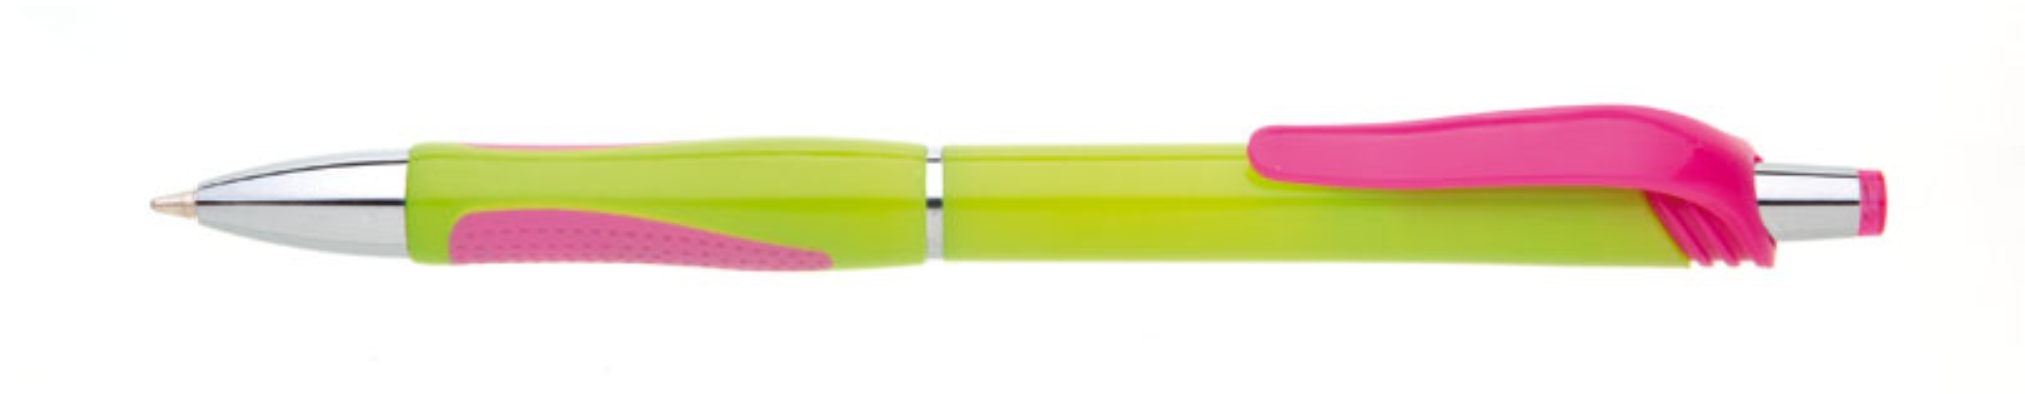 Propiska plast COLORI hrot 1mm, zelená světlá